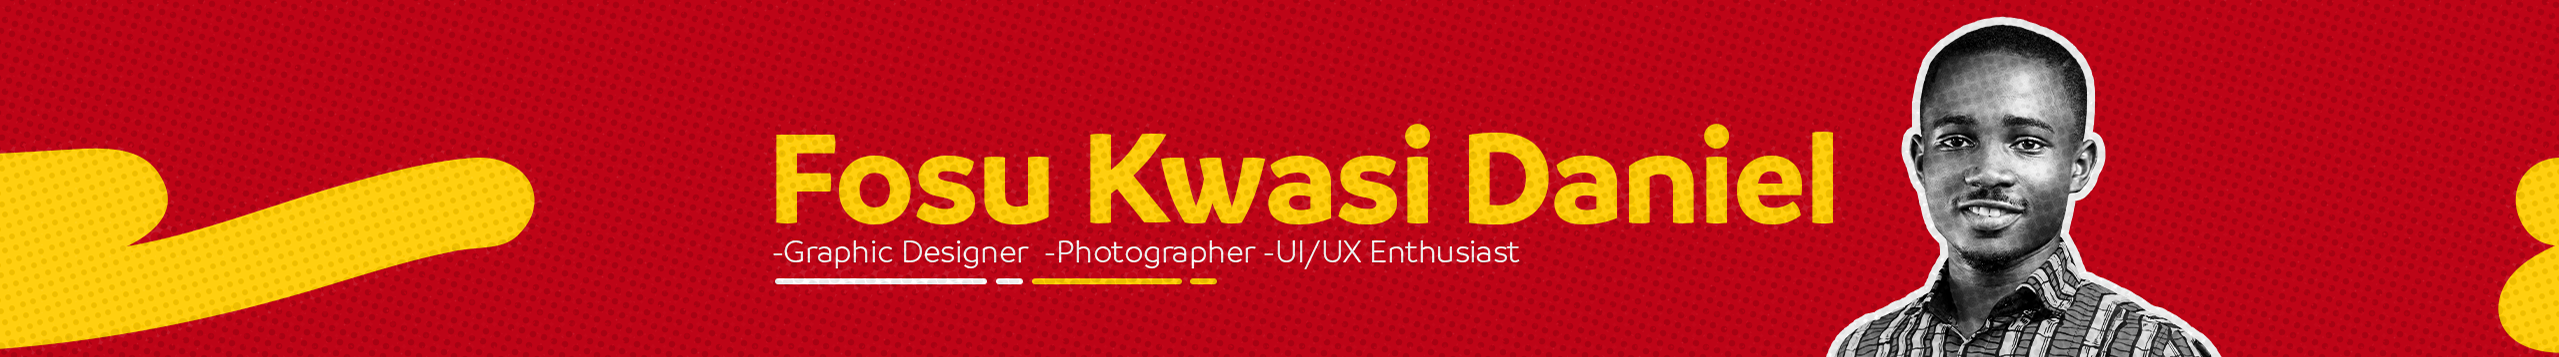 Fosu Kwasi Daniel's profile banner